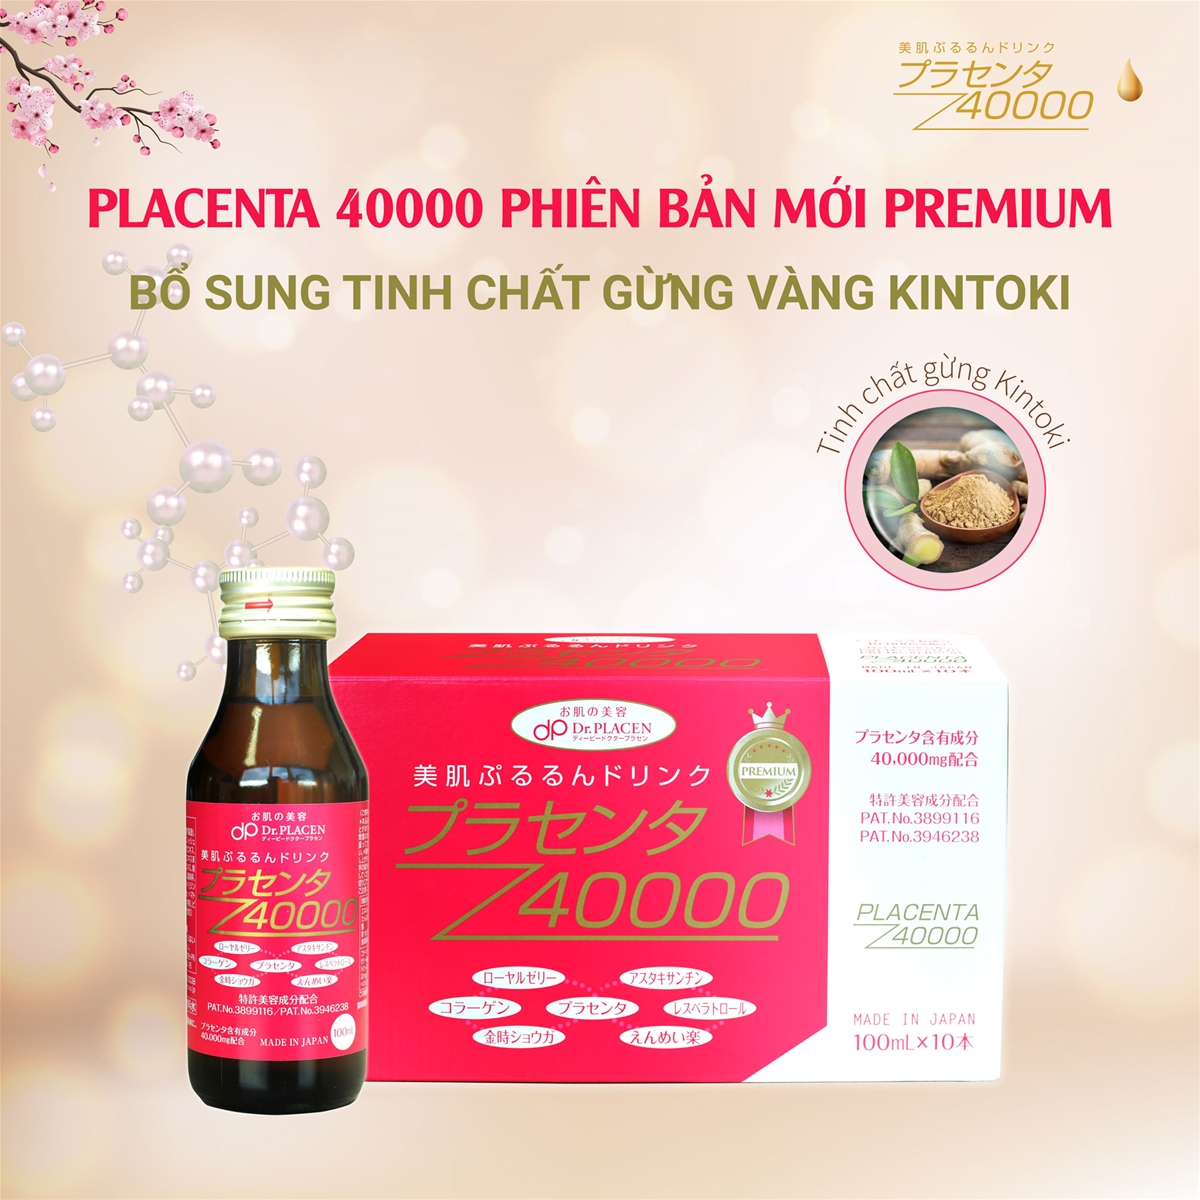 Placenta 40000 Premium bổ sung thành phần gừng vàng Kintoki